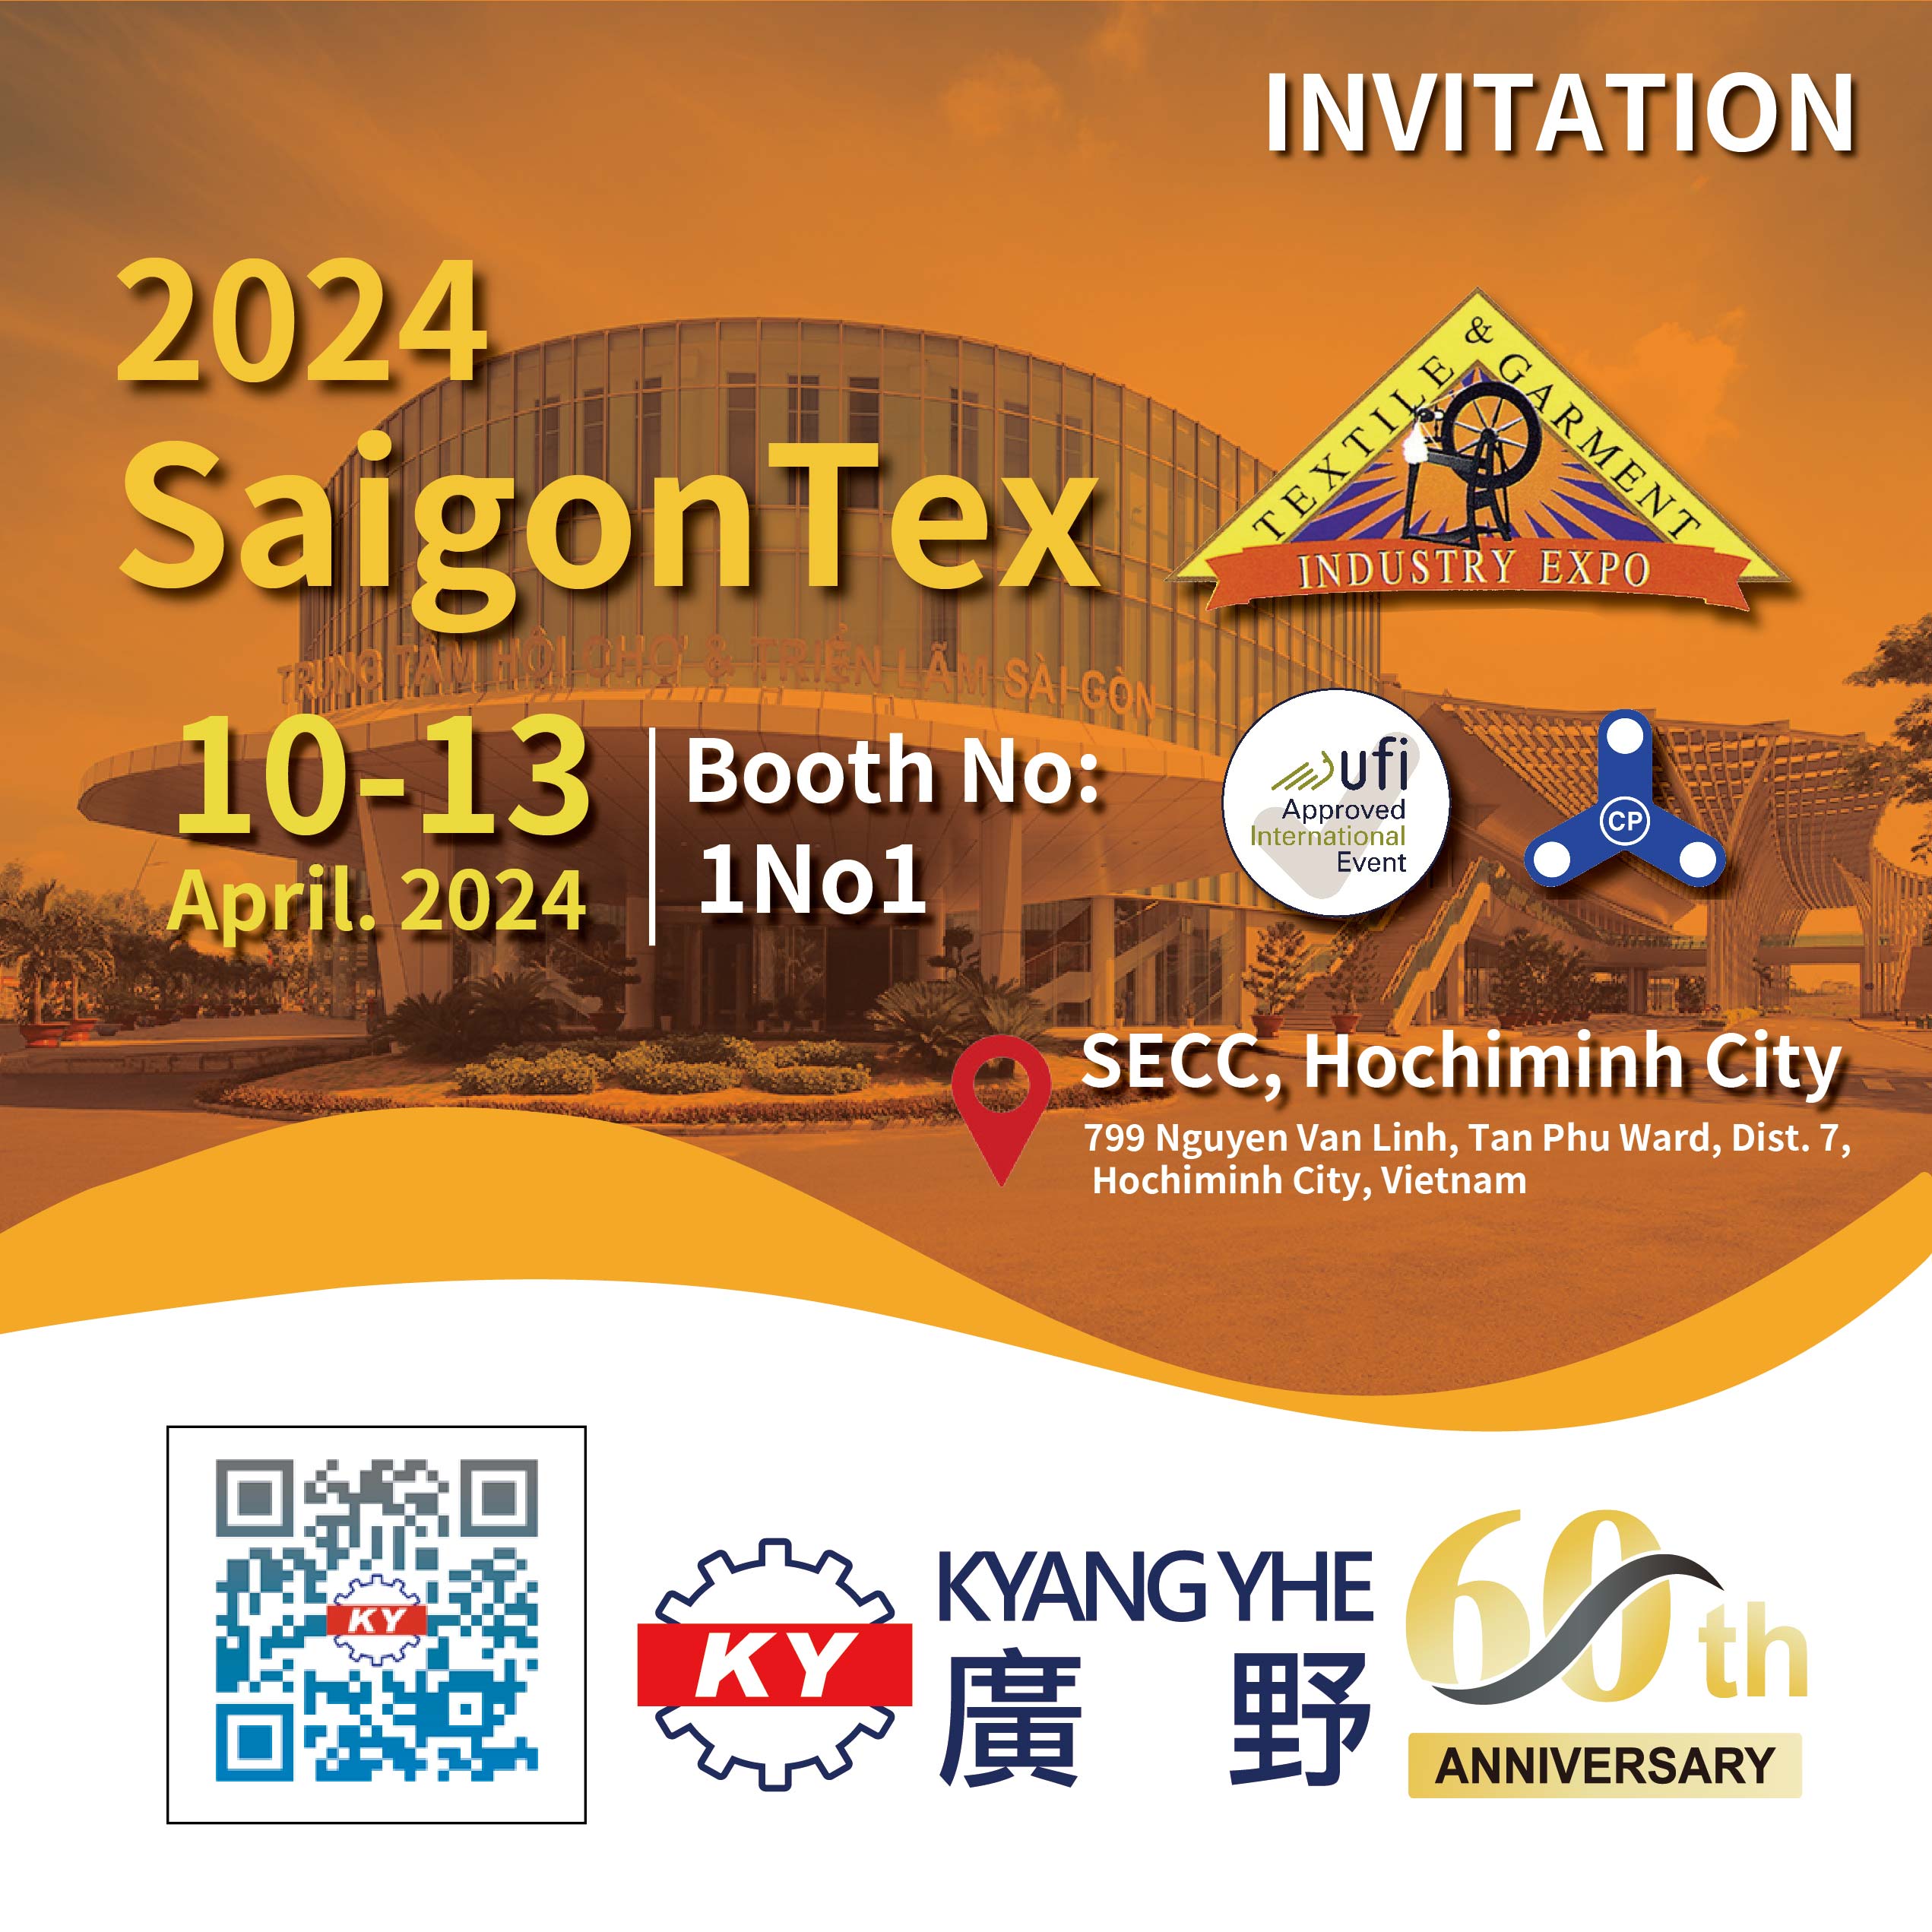 Kyang Yhe irá participar na Expo de Indústria Têxtil e de Vestuário de Saigon no Vietnã em 2024